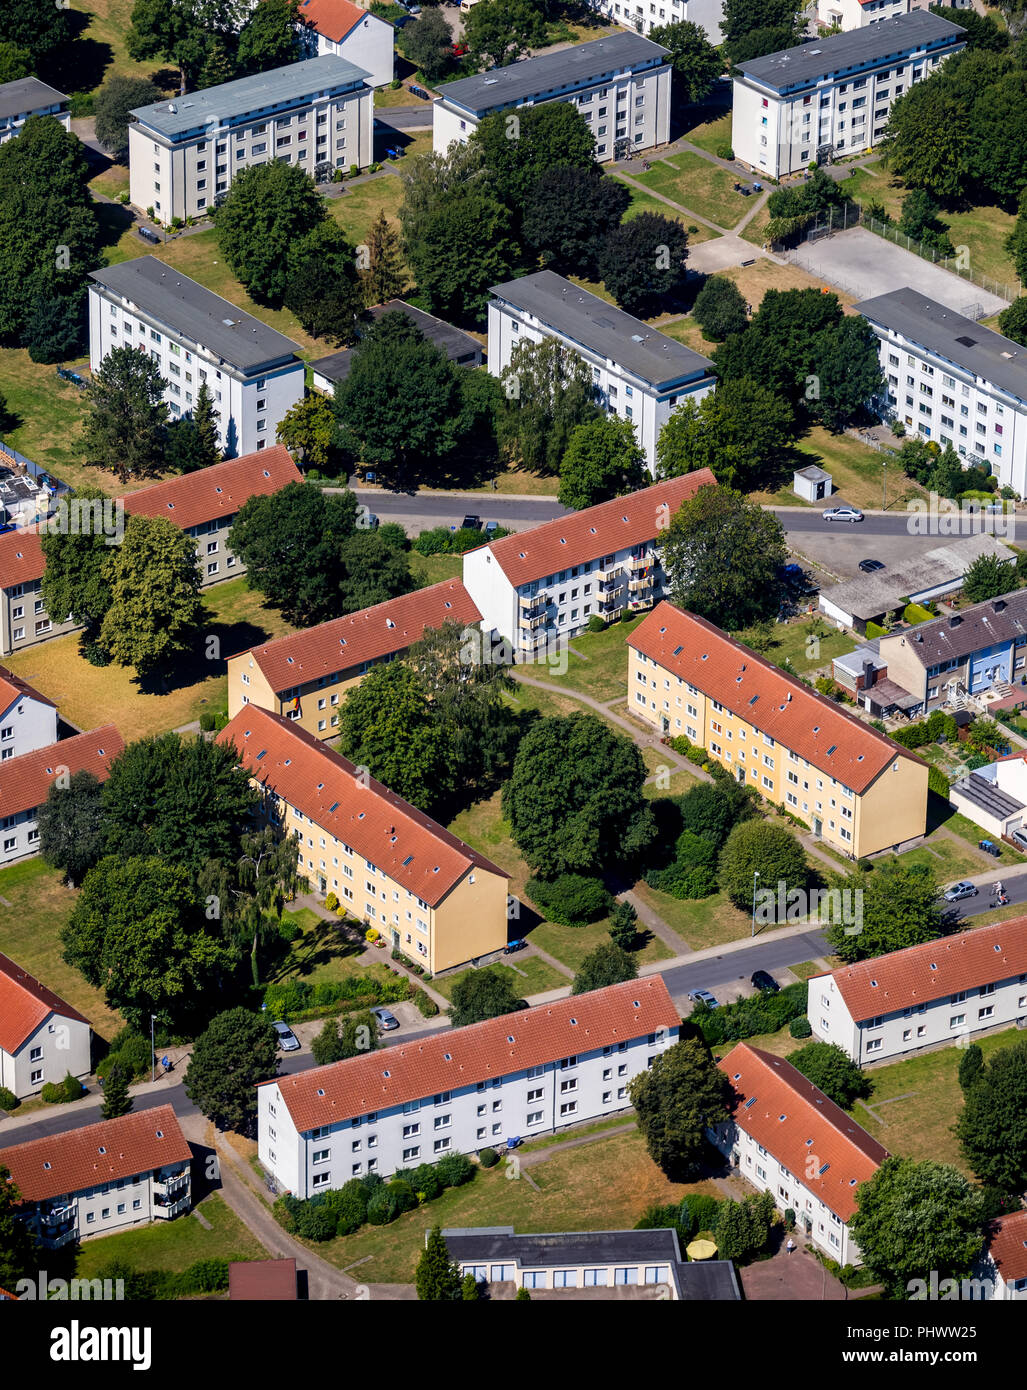 row houses and apartment blocks Bürgermeister-Corneli-Ring, Von-Guericke-Straße, Ahlen, Ruhrgebiet, Nordrhein-Westfalen, Germany, DEU, Europe, aerial  Stock Photo